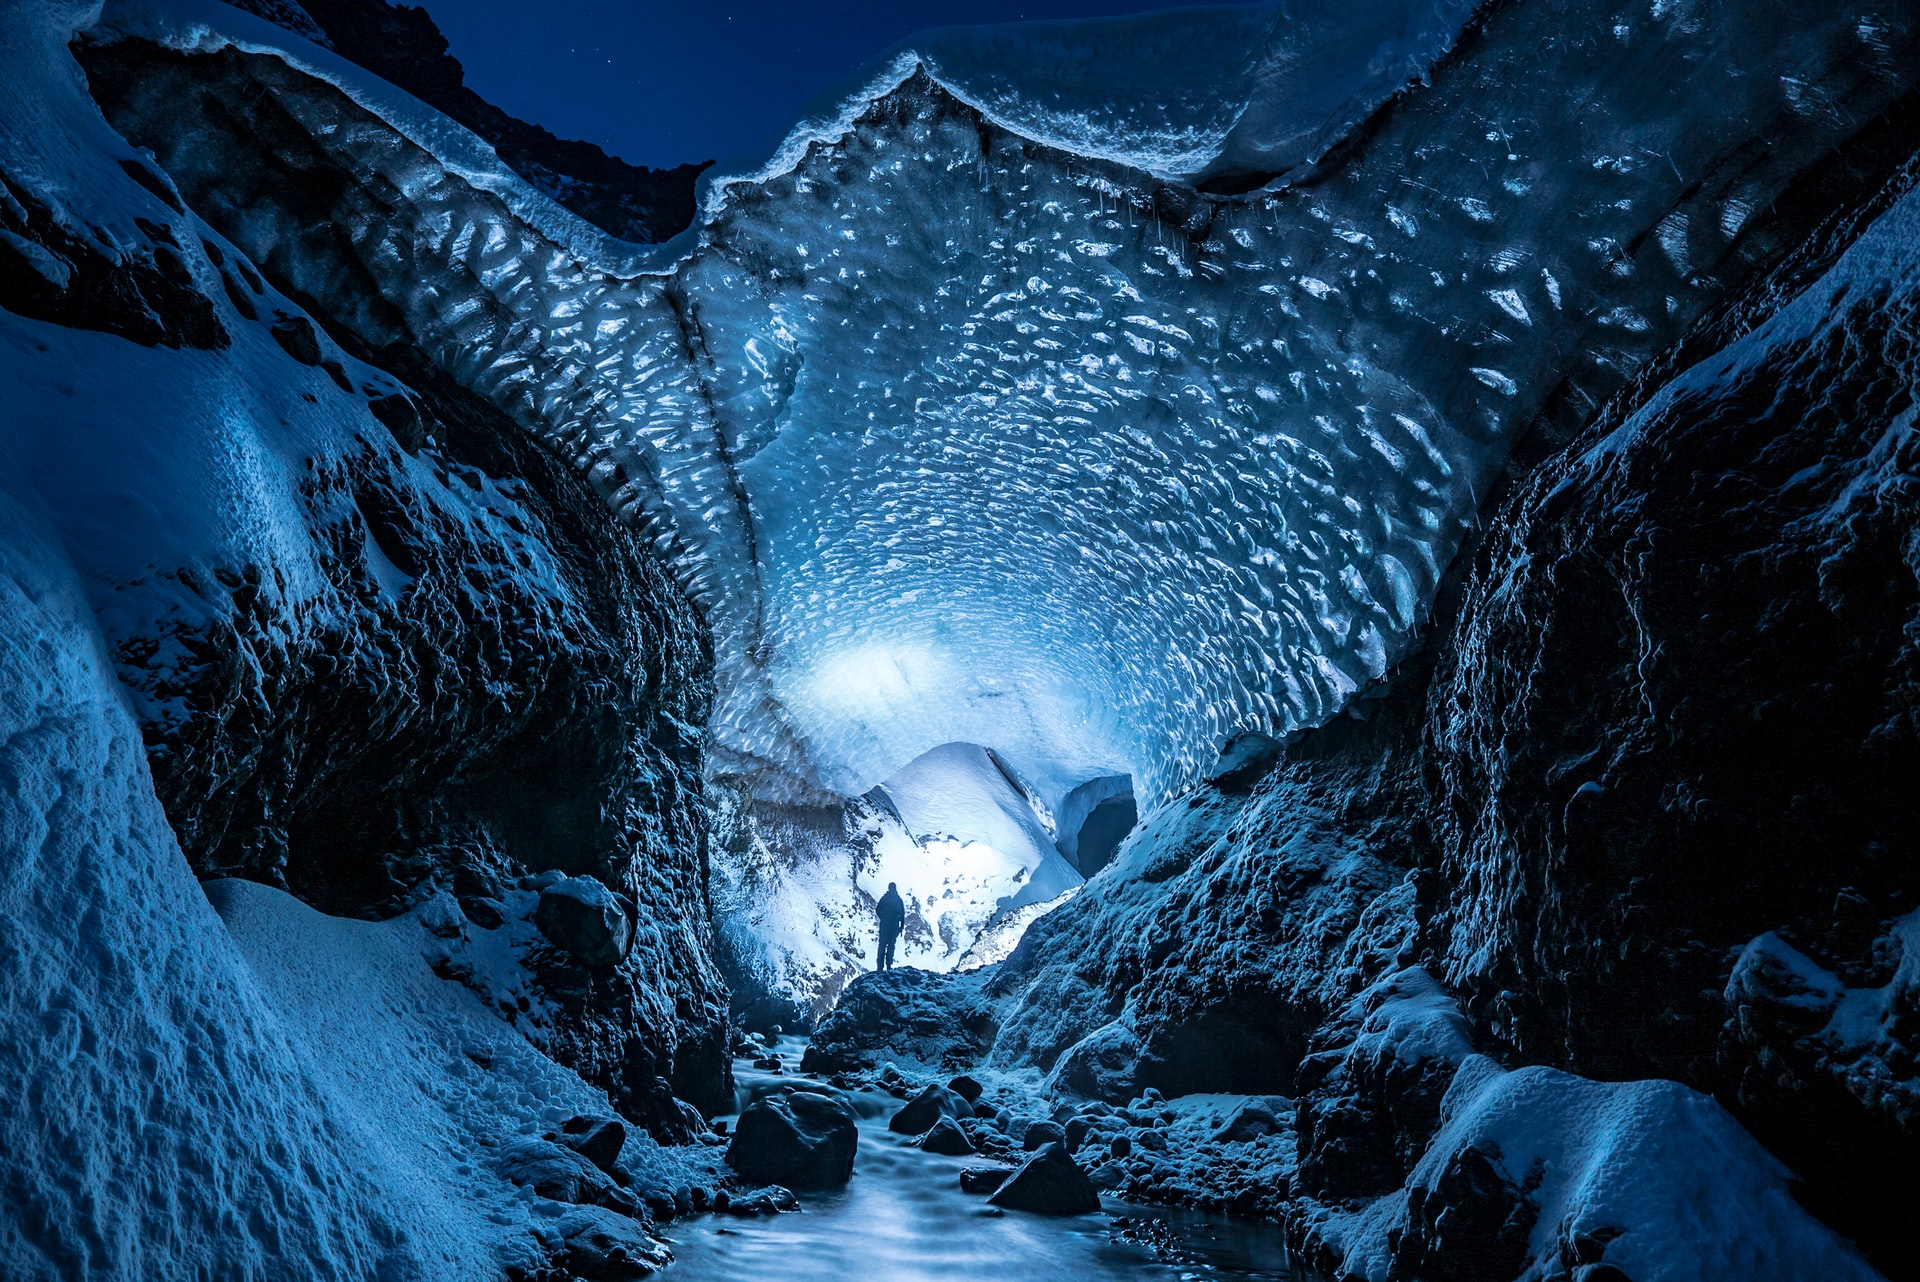 Ice cave in Gigjökull glacier, Iceland